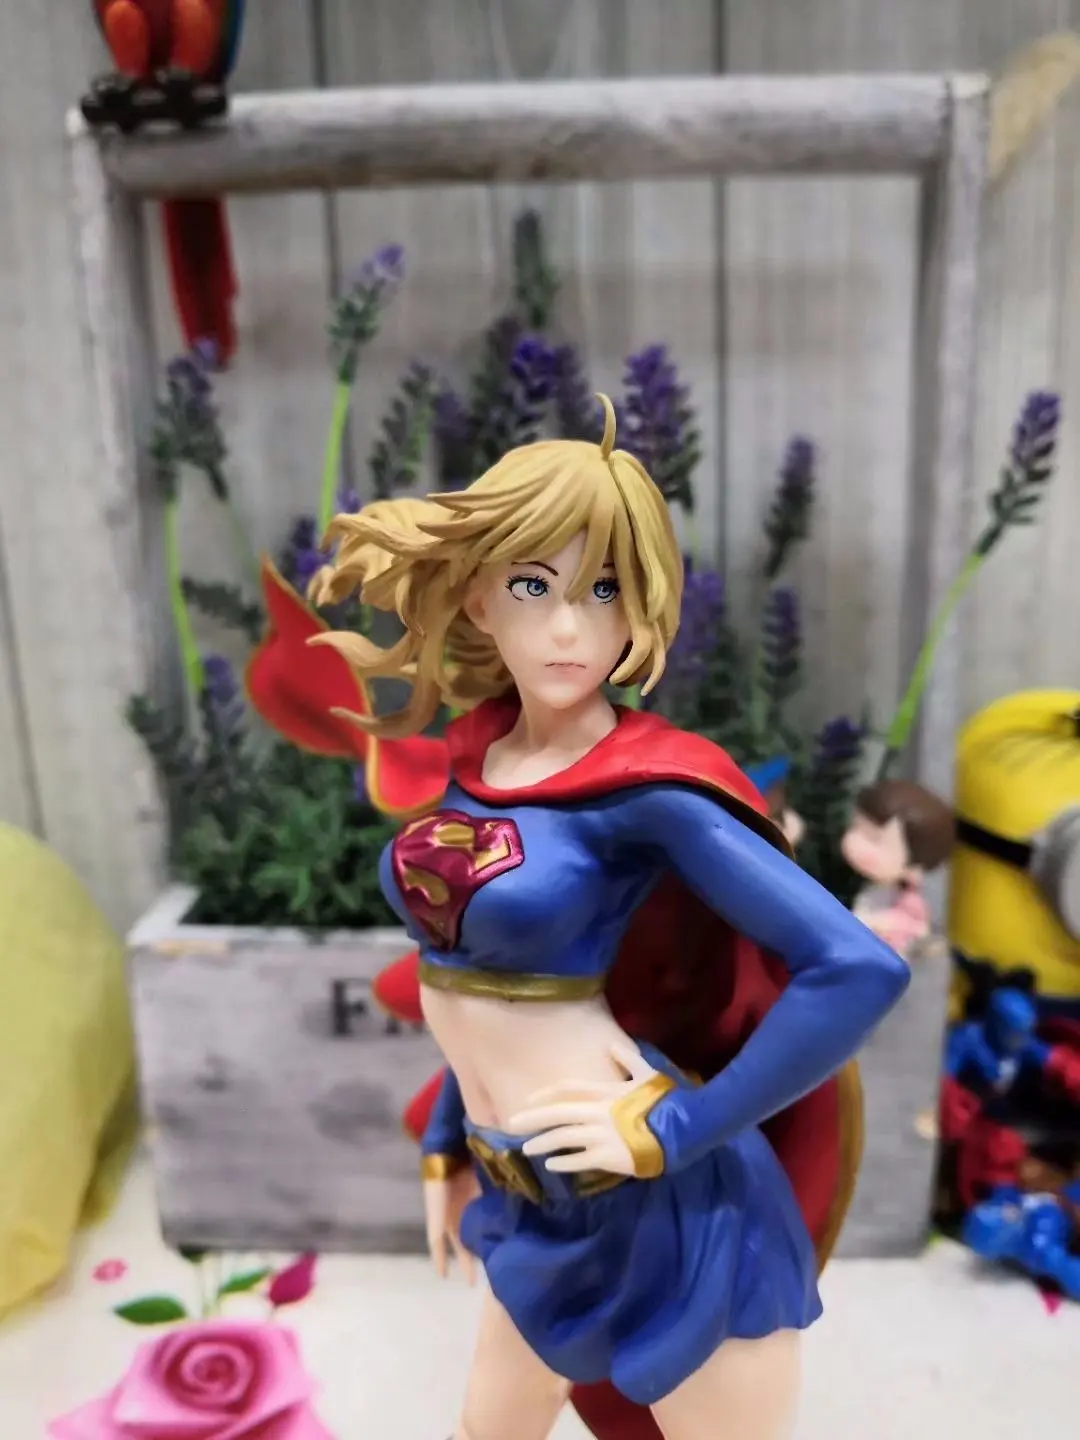 DC Comics Bishoujo Вселенная Супергерл возвращается ПВХ полная фигура Лига Справедливости Супер девушка игрушки 21 см